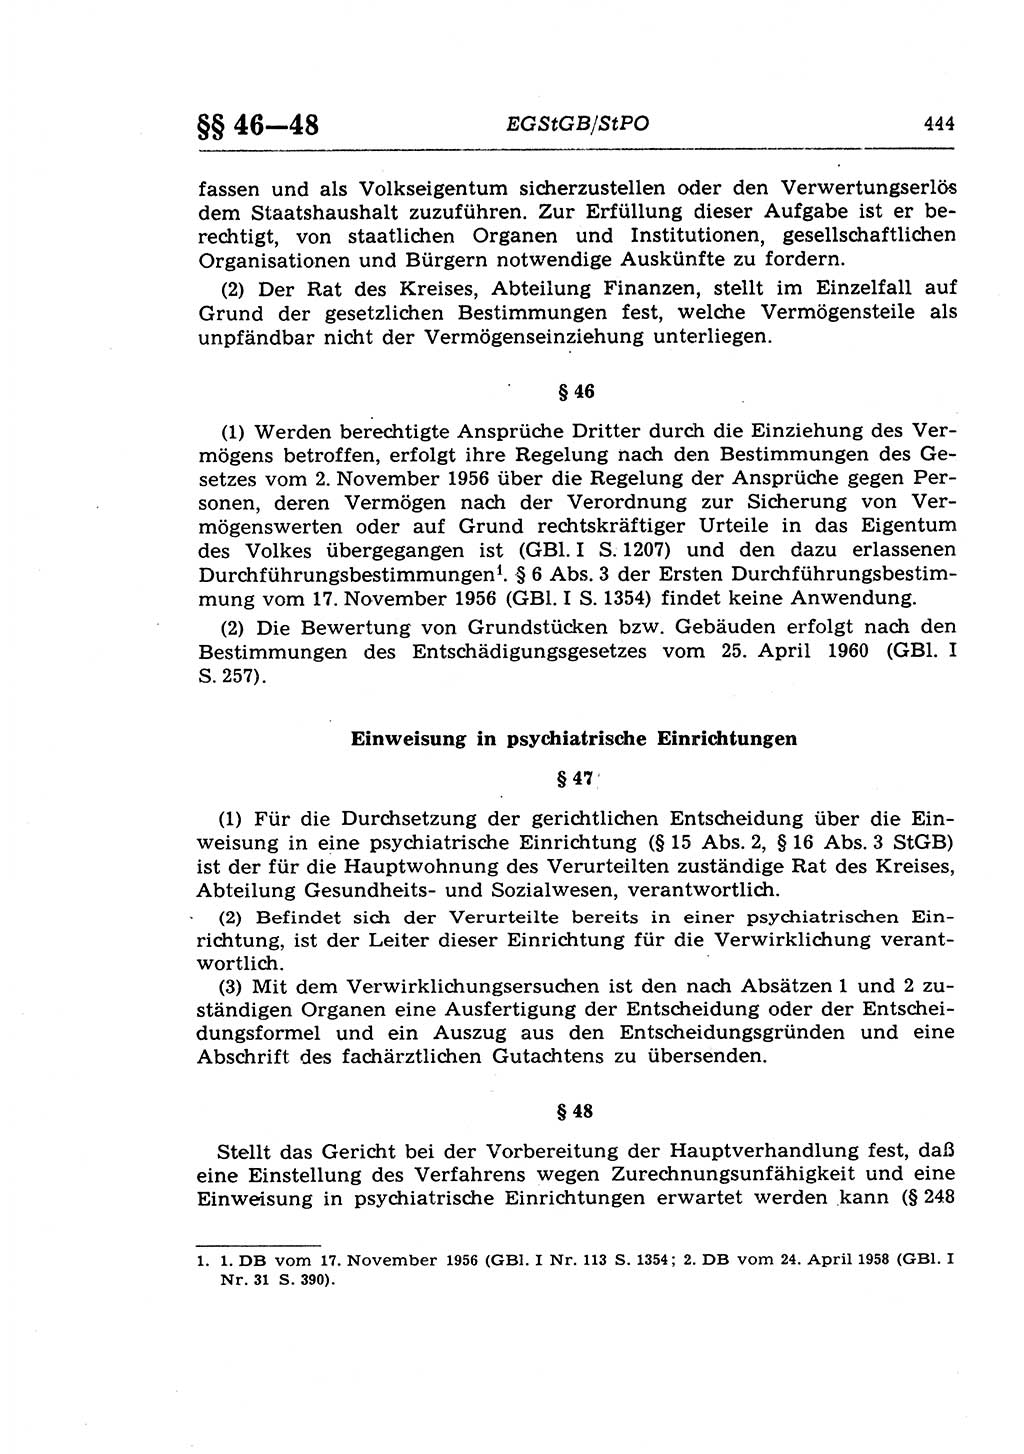 Strafprozeßrecht der DDR (Deutsche Demokratische Republik), Lehrkommentar zur Strafprozeßordnung (StPO) 1968, Seite 444 (Strafprozeßr. DDR Lehrkomm. StPO 19688, S. 444)